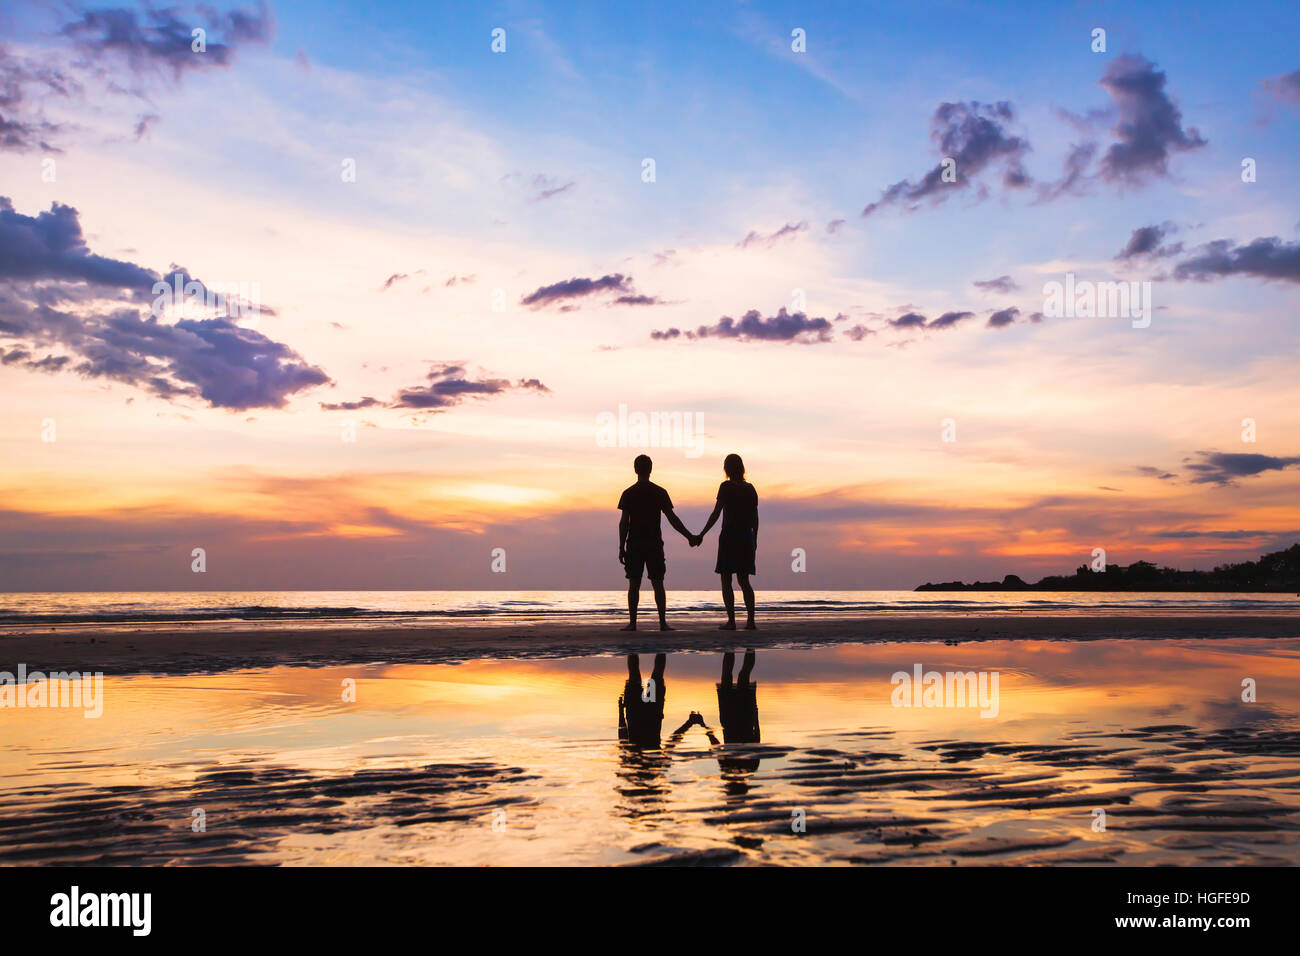 Famille heureuse sur la plage, silhouette de couple at sunset, homme et femme, les relations, l'amour Banque D'Images